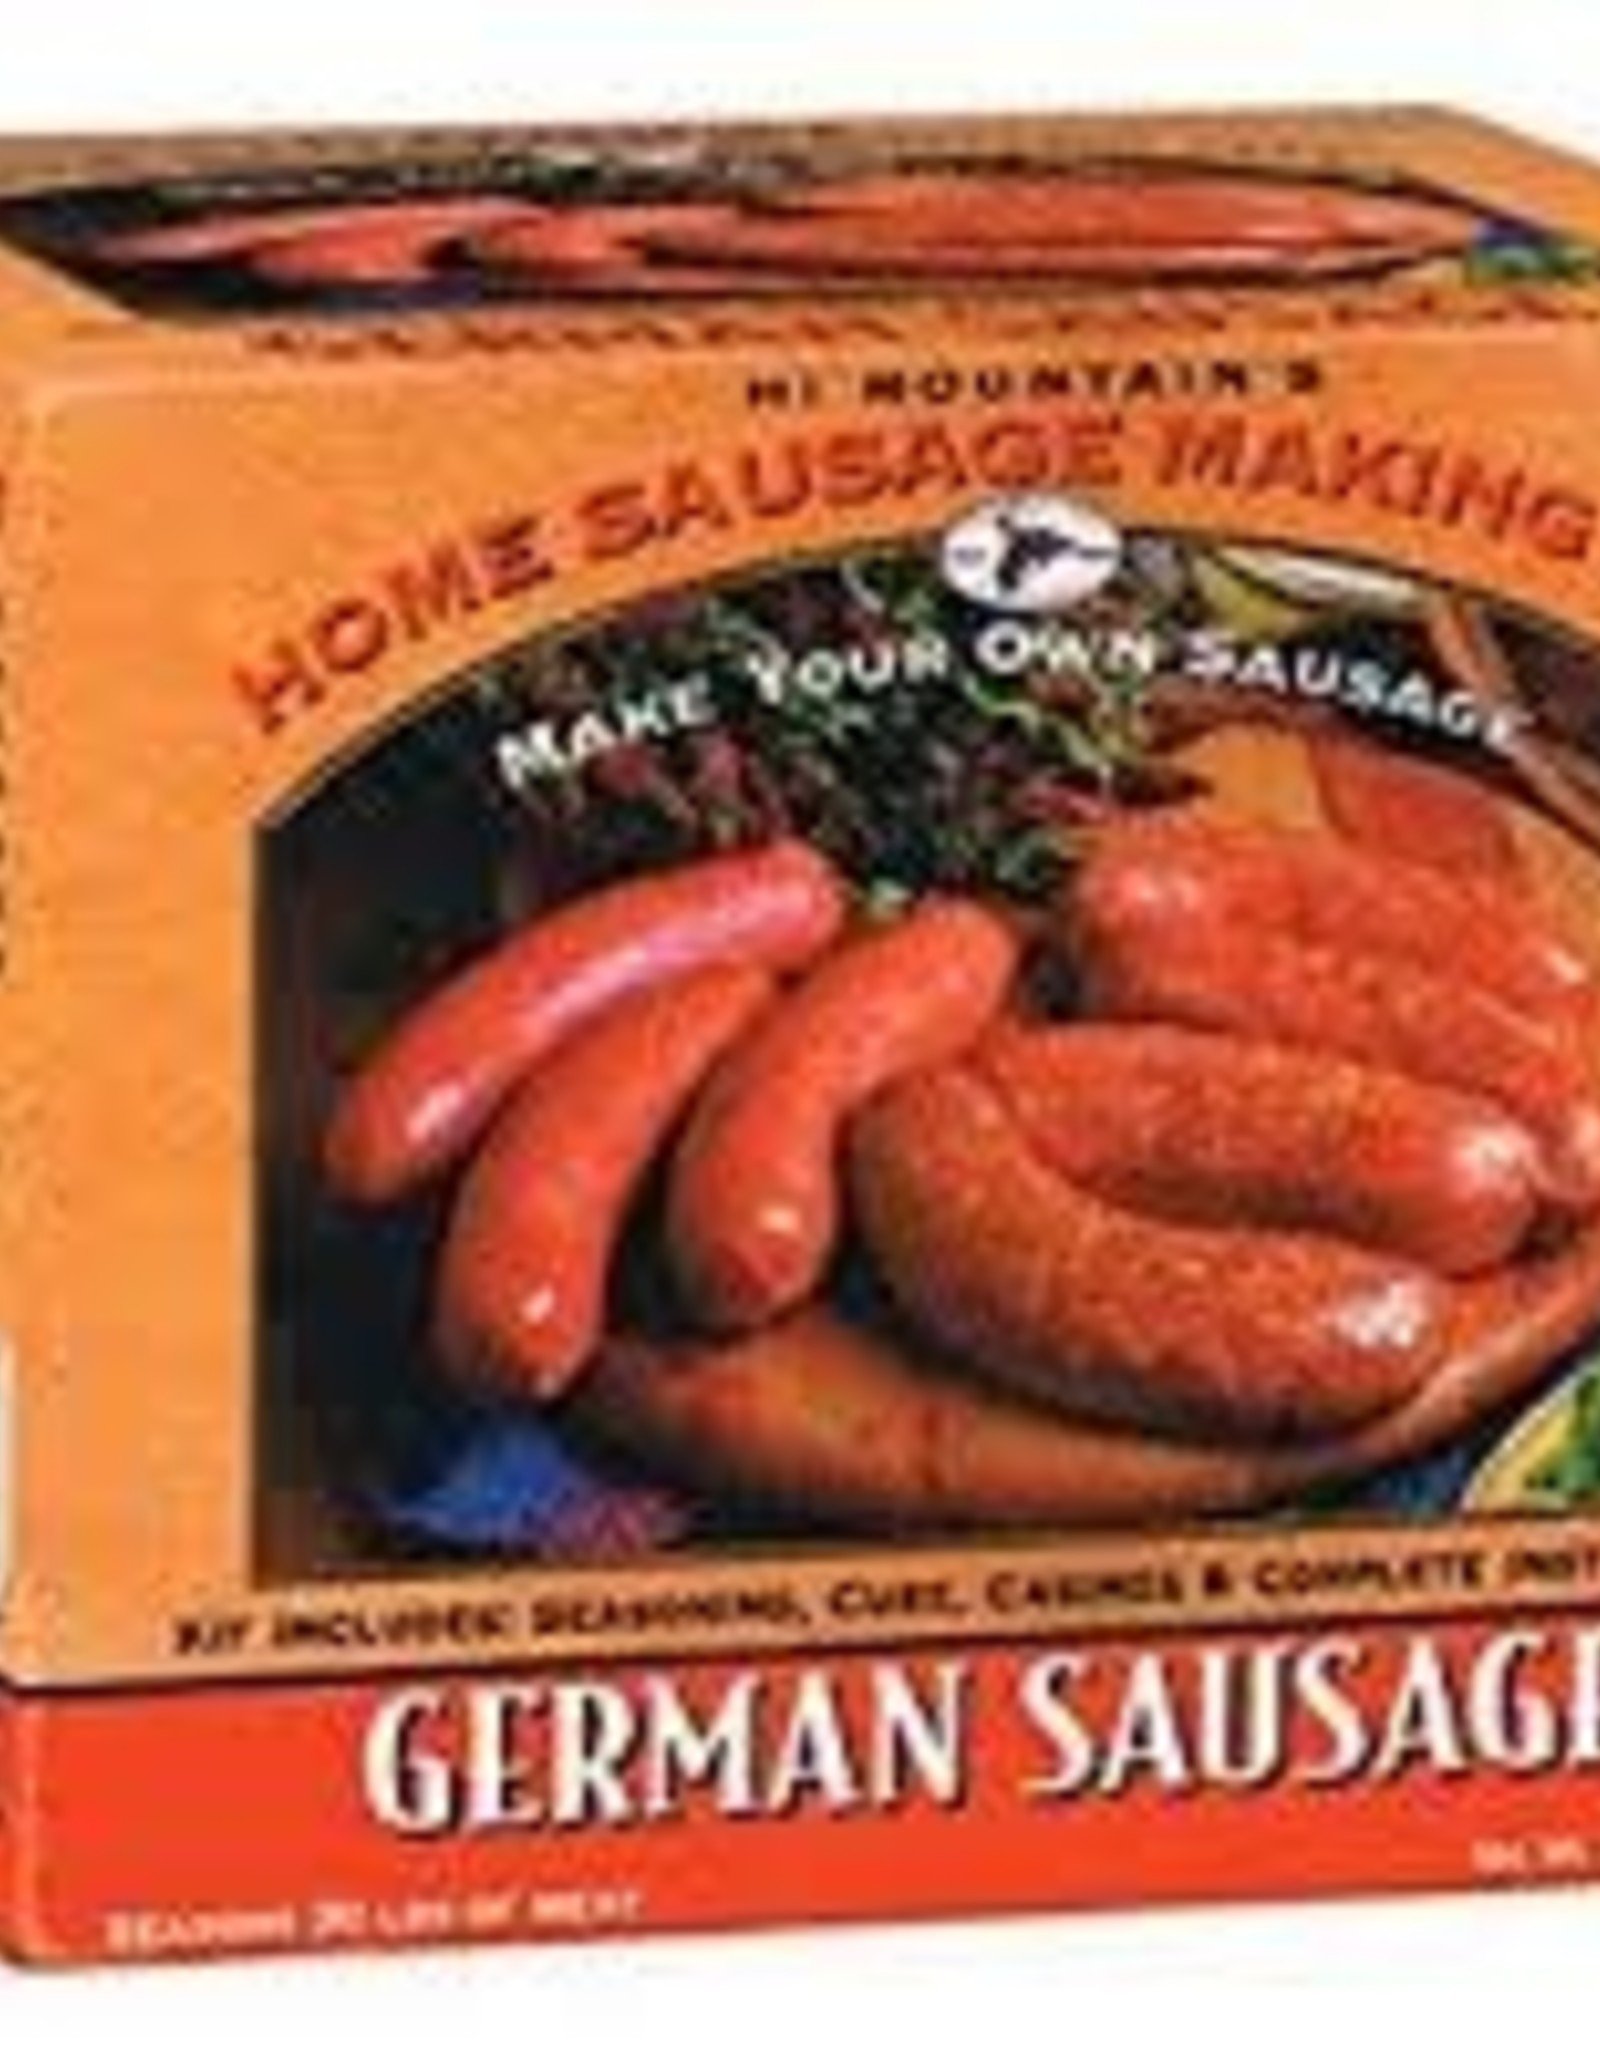 sausage making kit